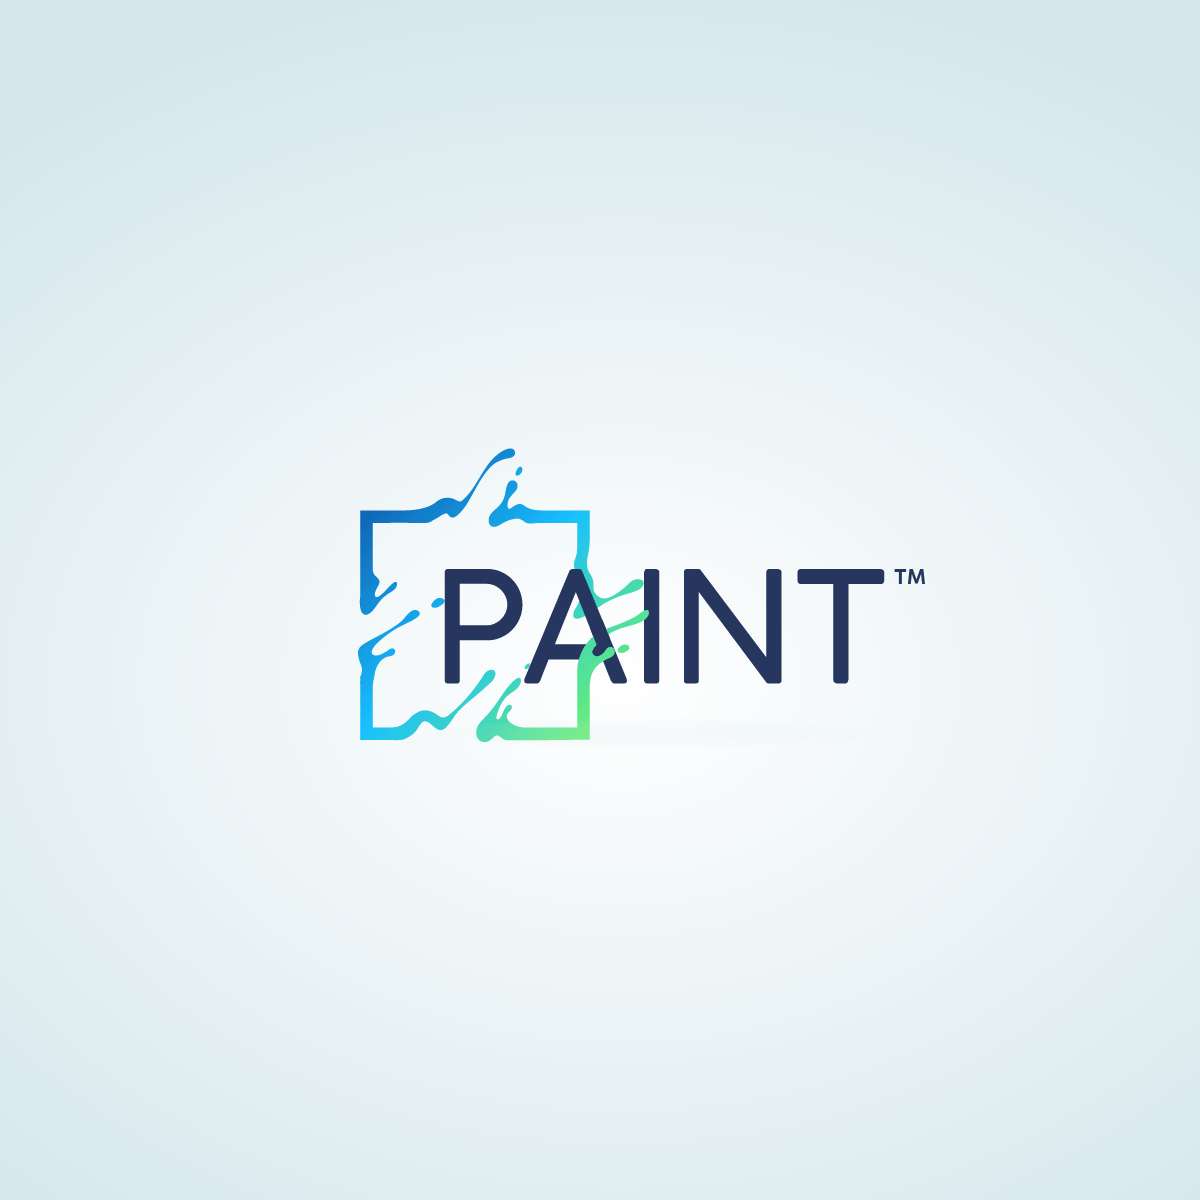 Paint App Logo - Paint Logo